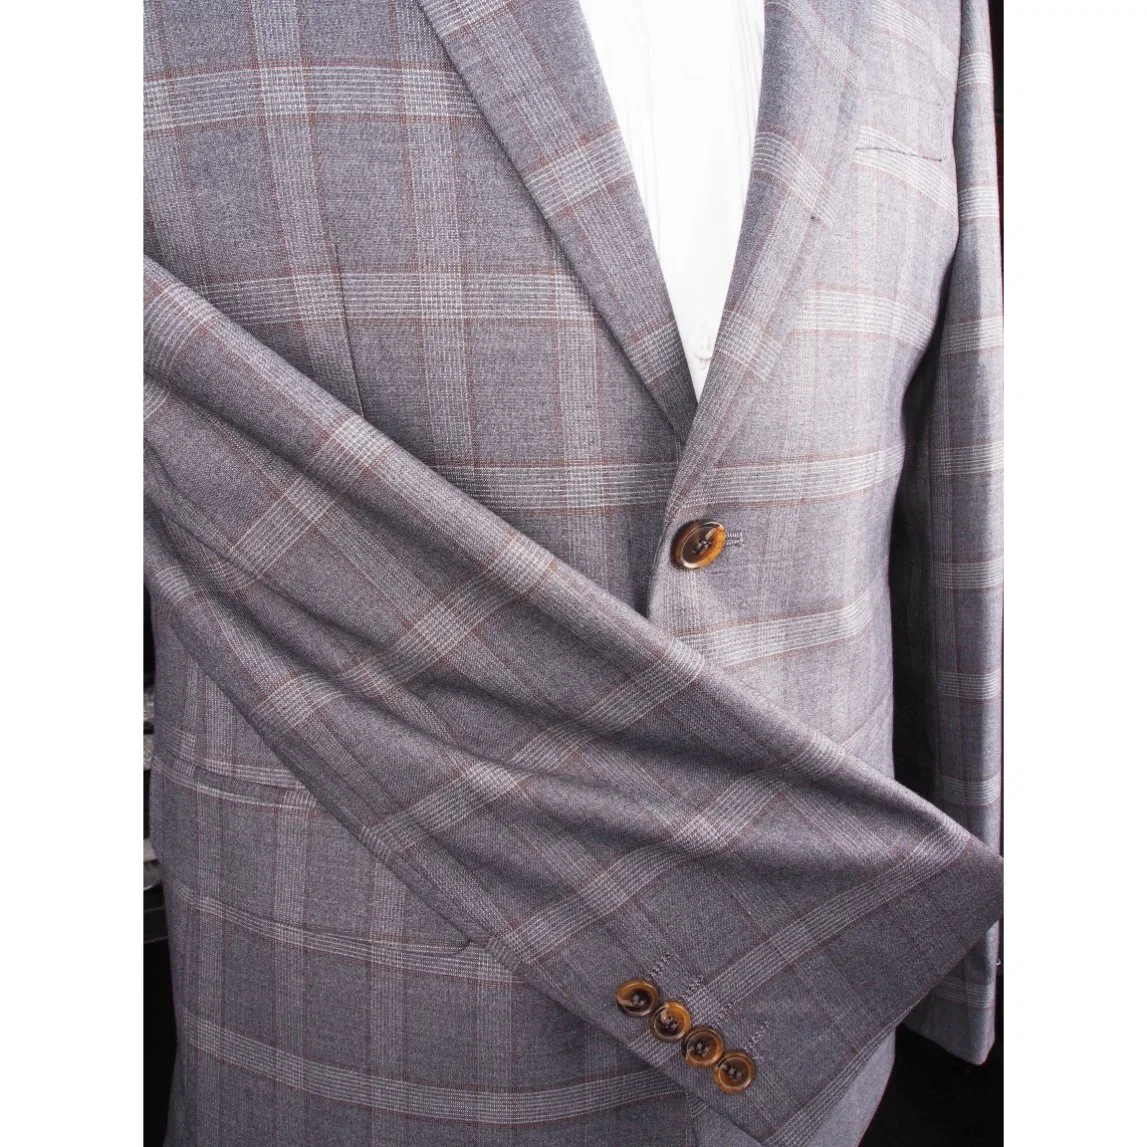 2 Piece Peak Lapel Modern Fit Grey Plaid 100%Wool Business Suit